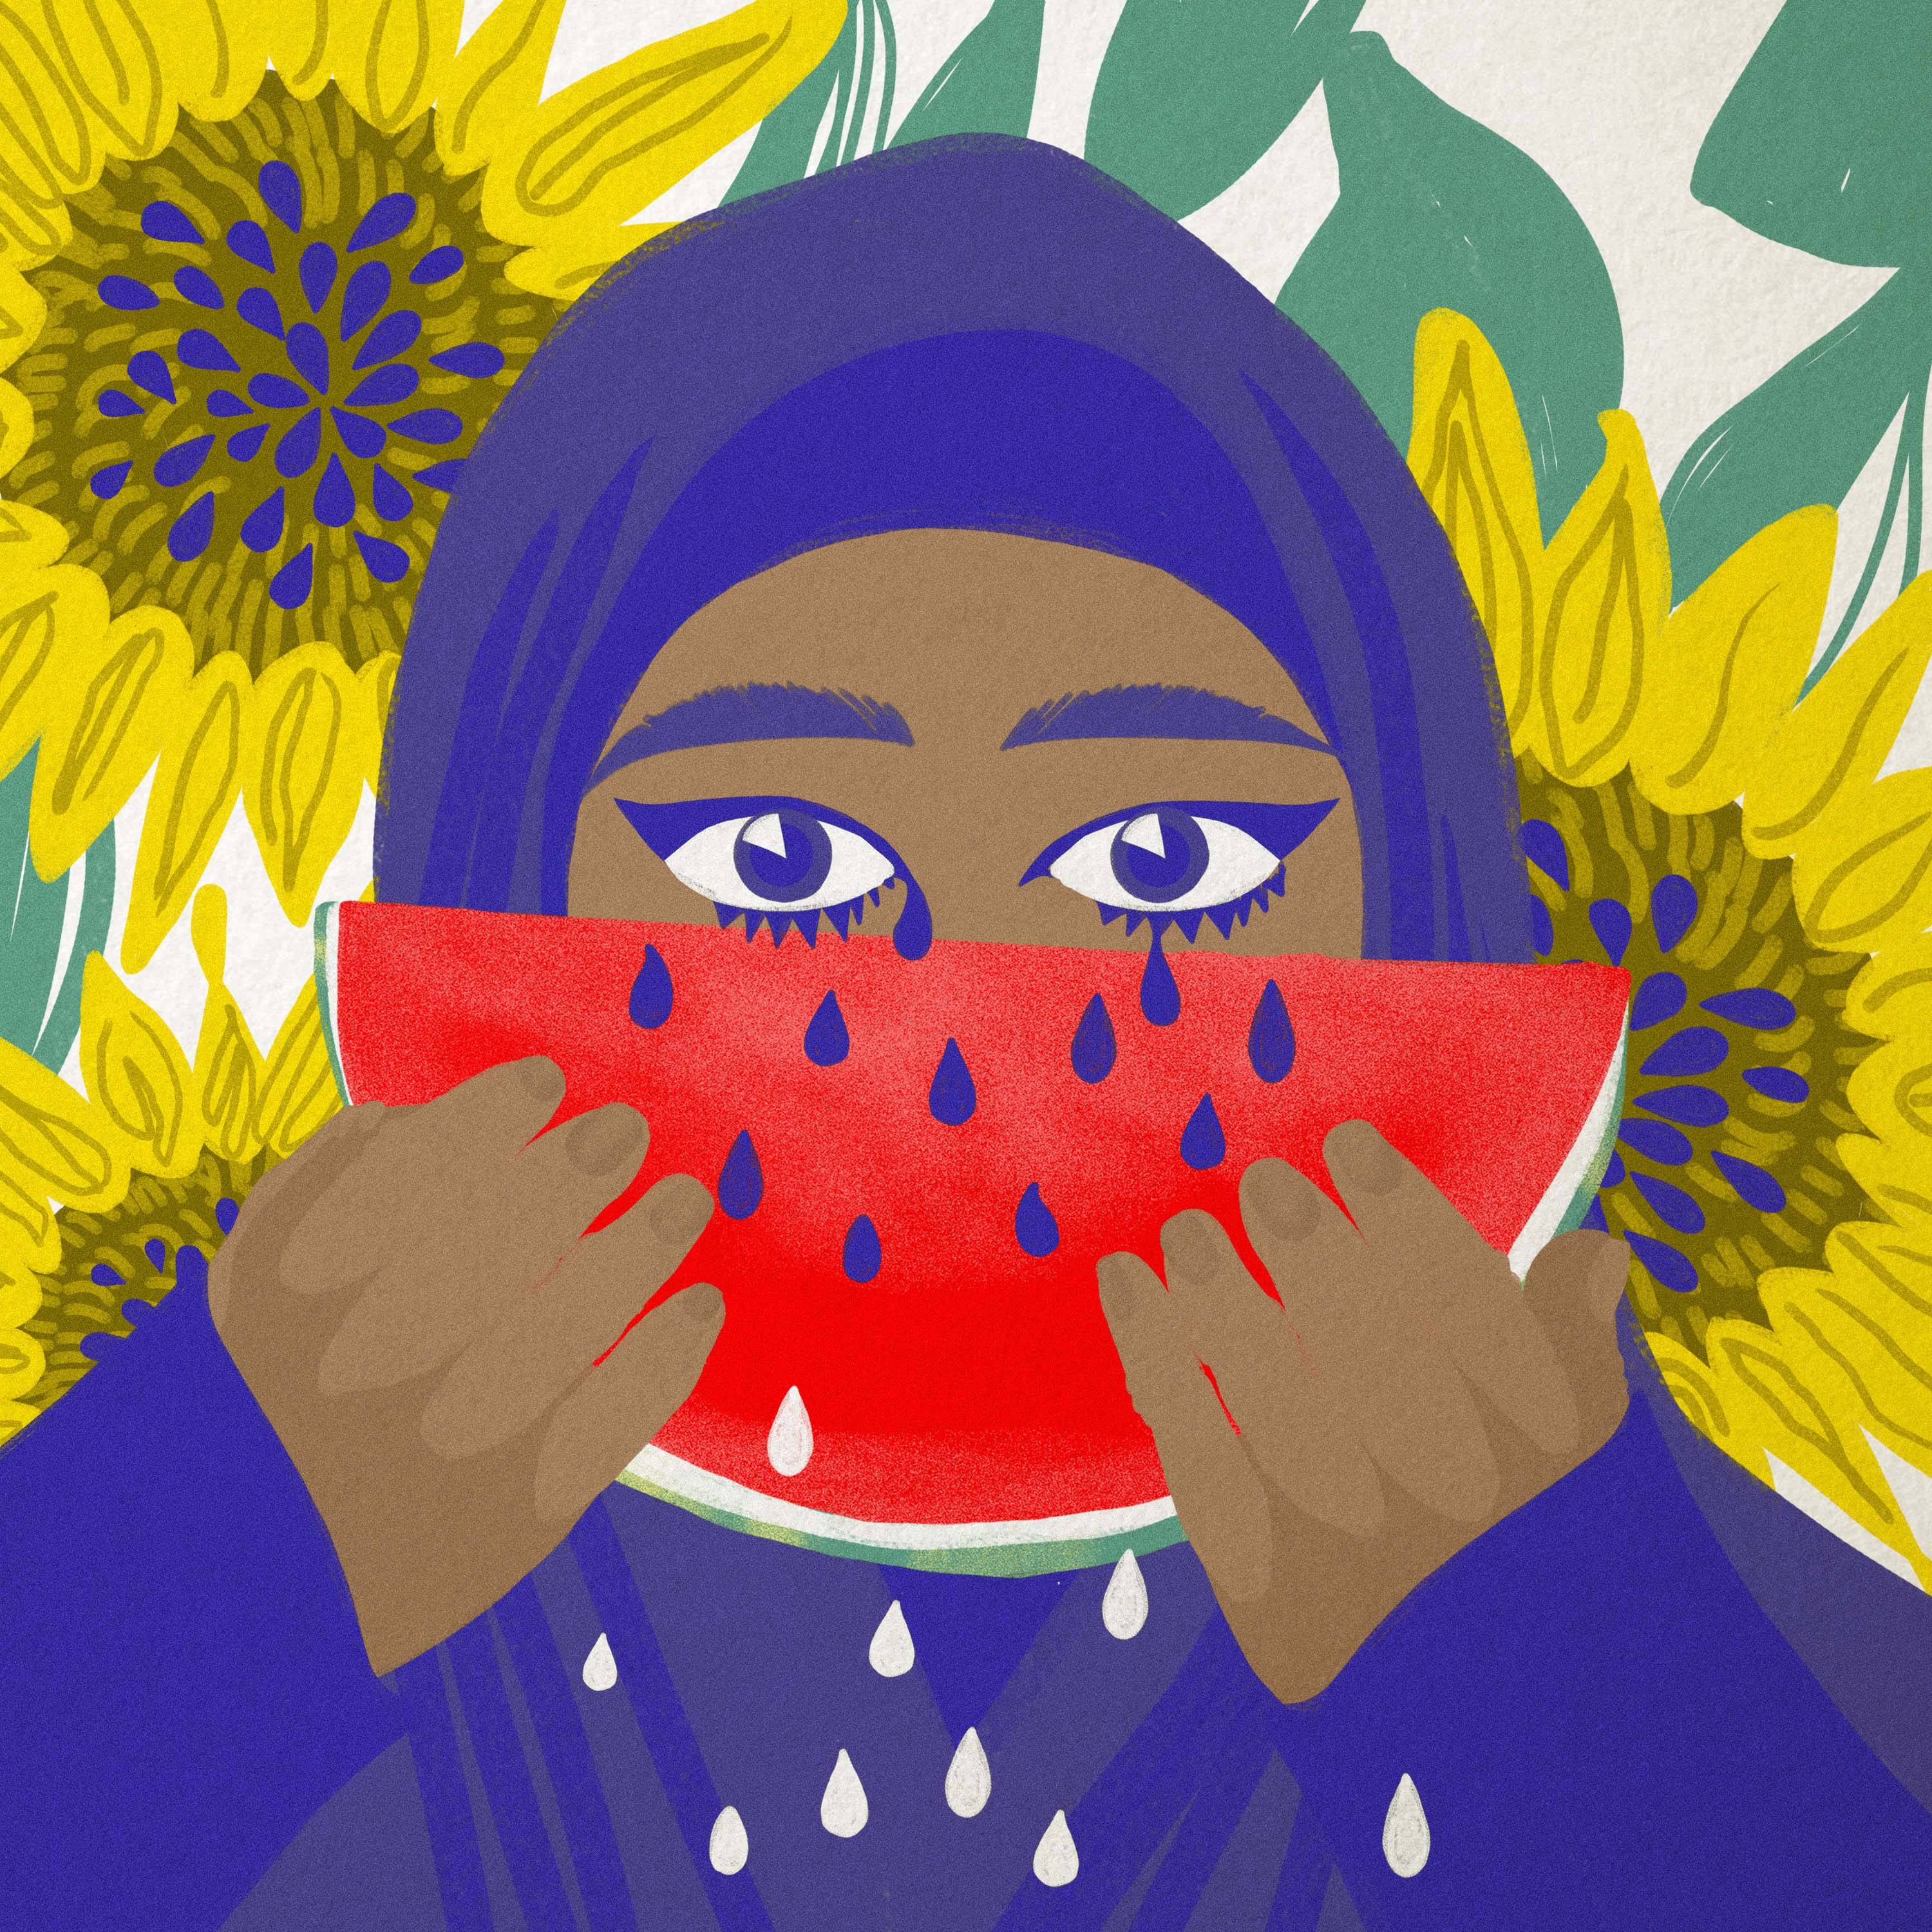 Rysunek przedstawia kobietę, która zasłania twarz połówką arbuza. Czarne pestki arbuza wyglądają jak jej łzy